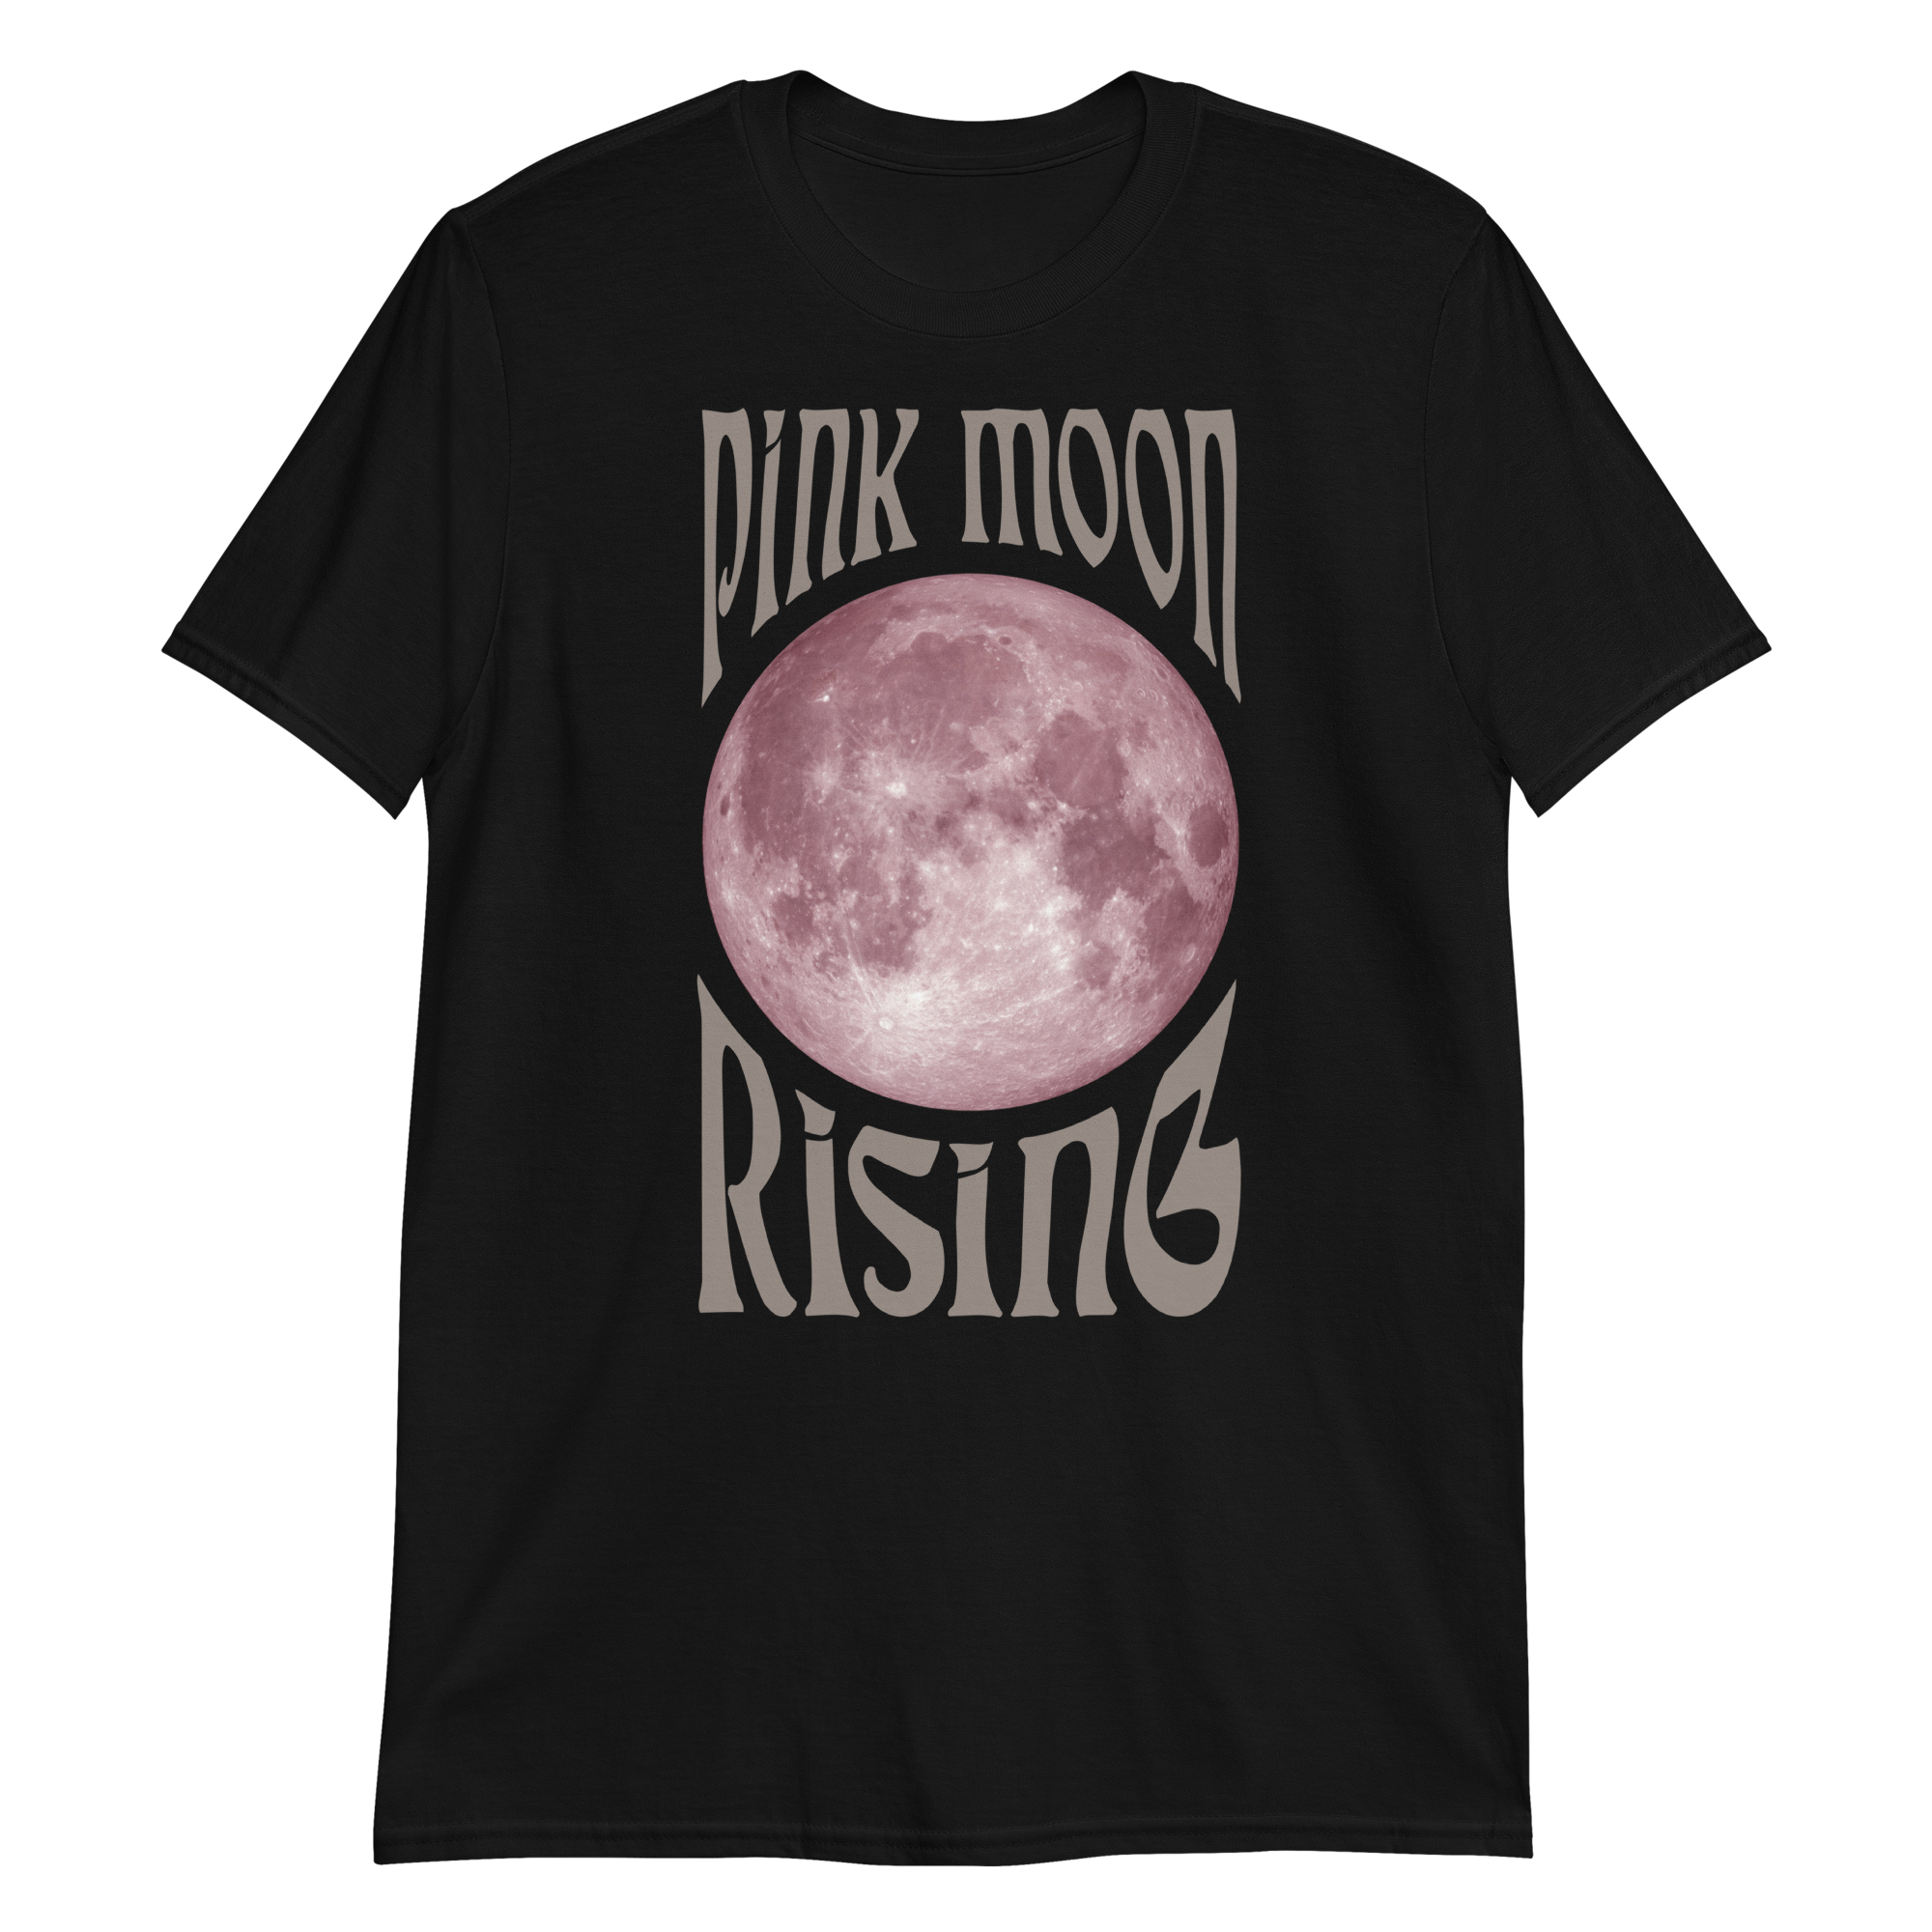 Pink Moon Rising